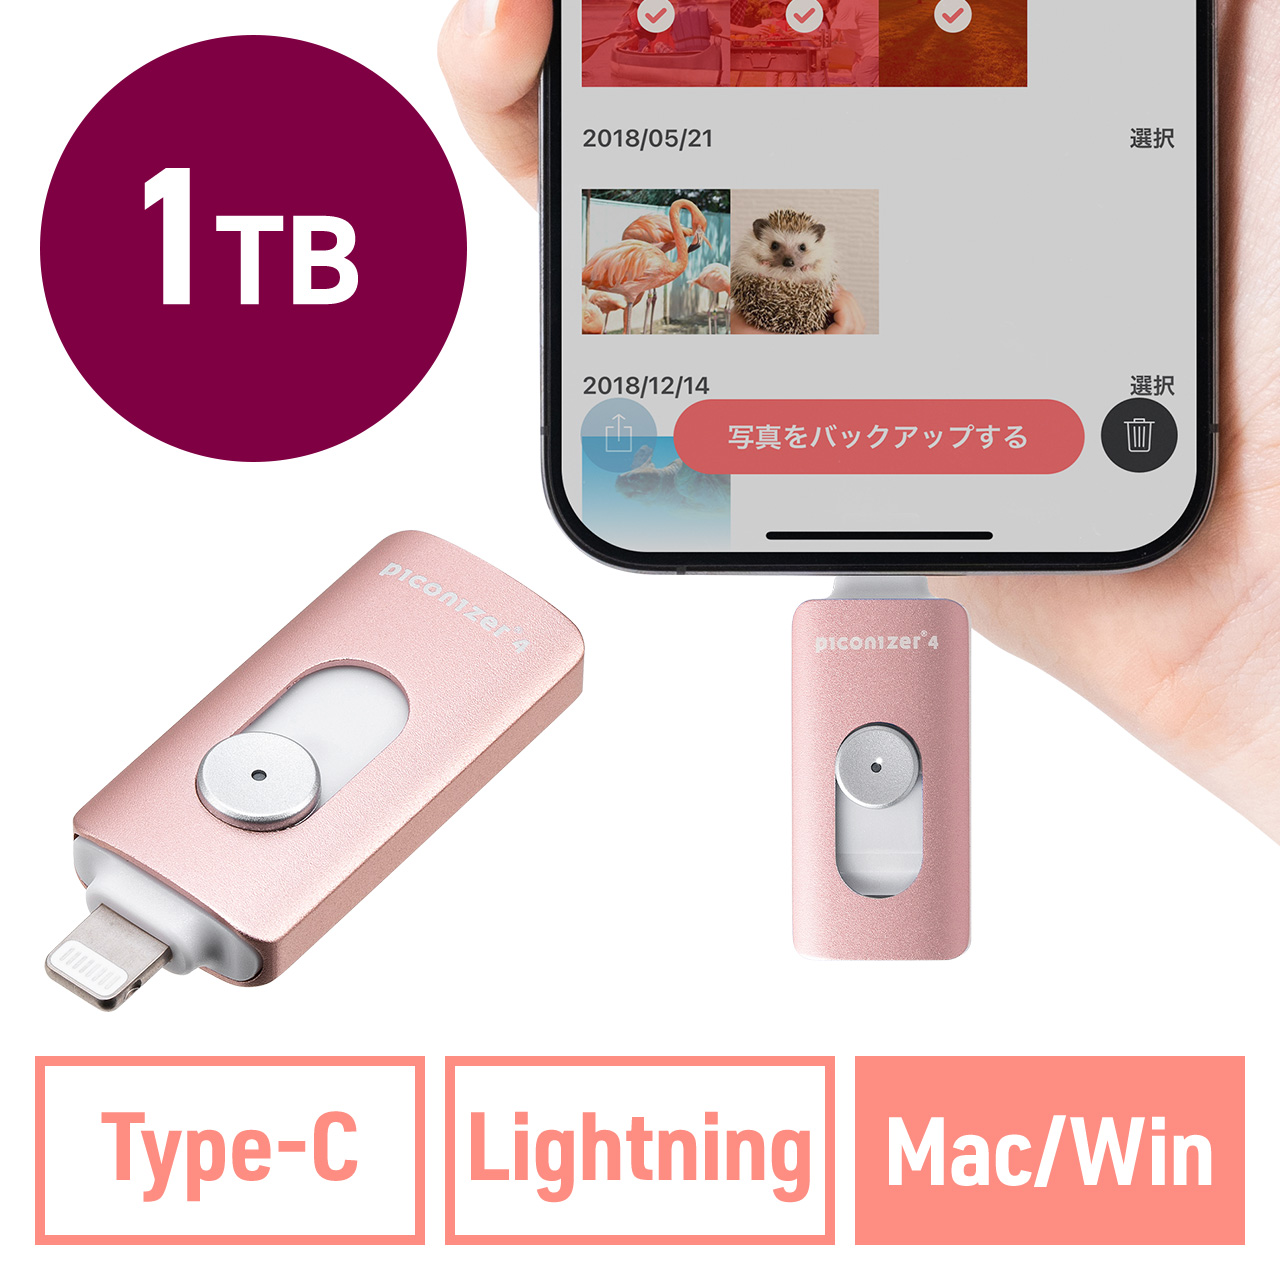 Lightning/Type-C USBメモリ 1TB ローズゴールド iPhone Android 対応 